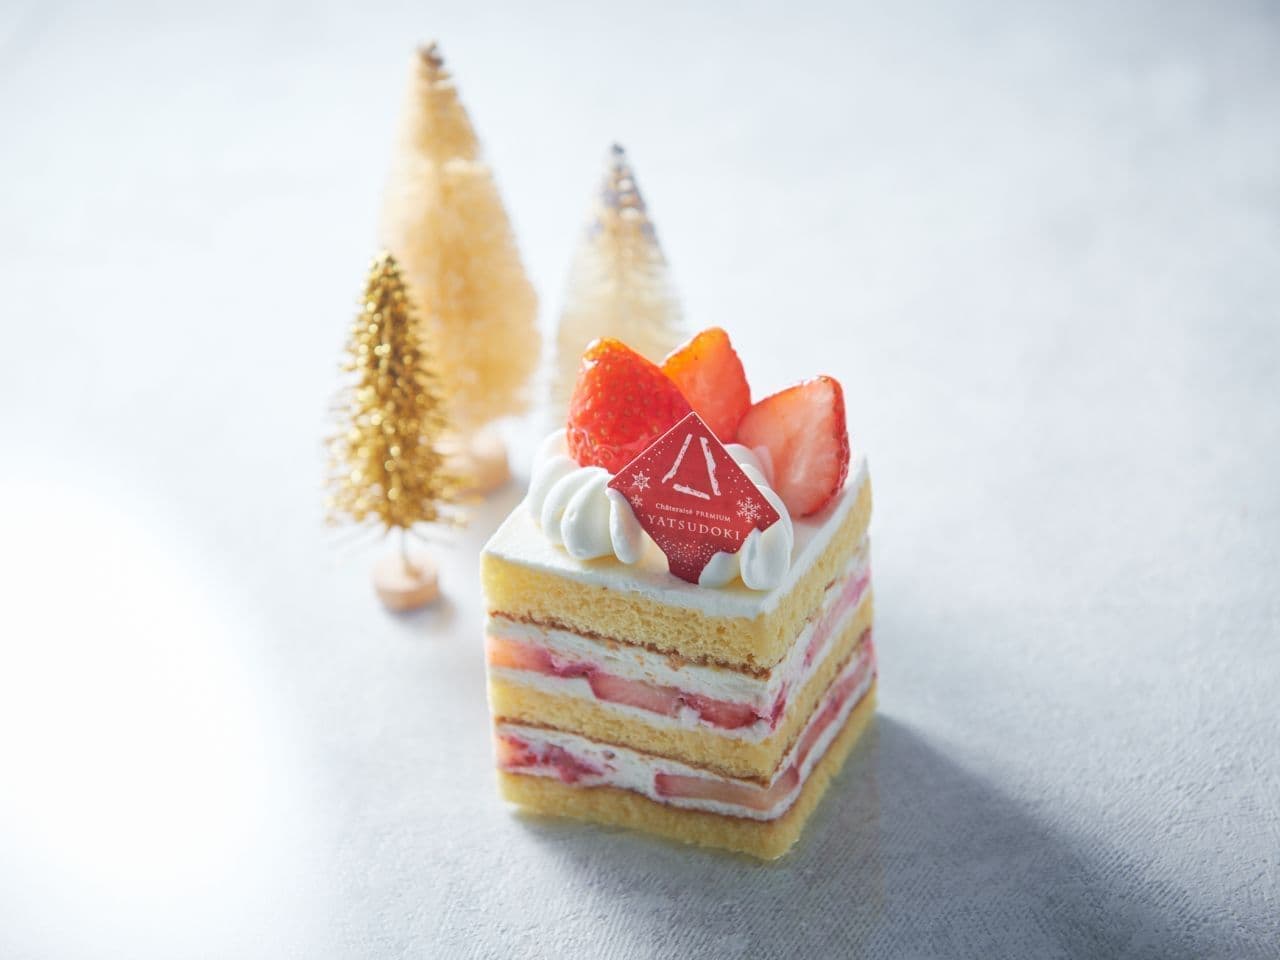 Yatsudoki Christmas Cake 2022 "Noel Strawberry Shortcake